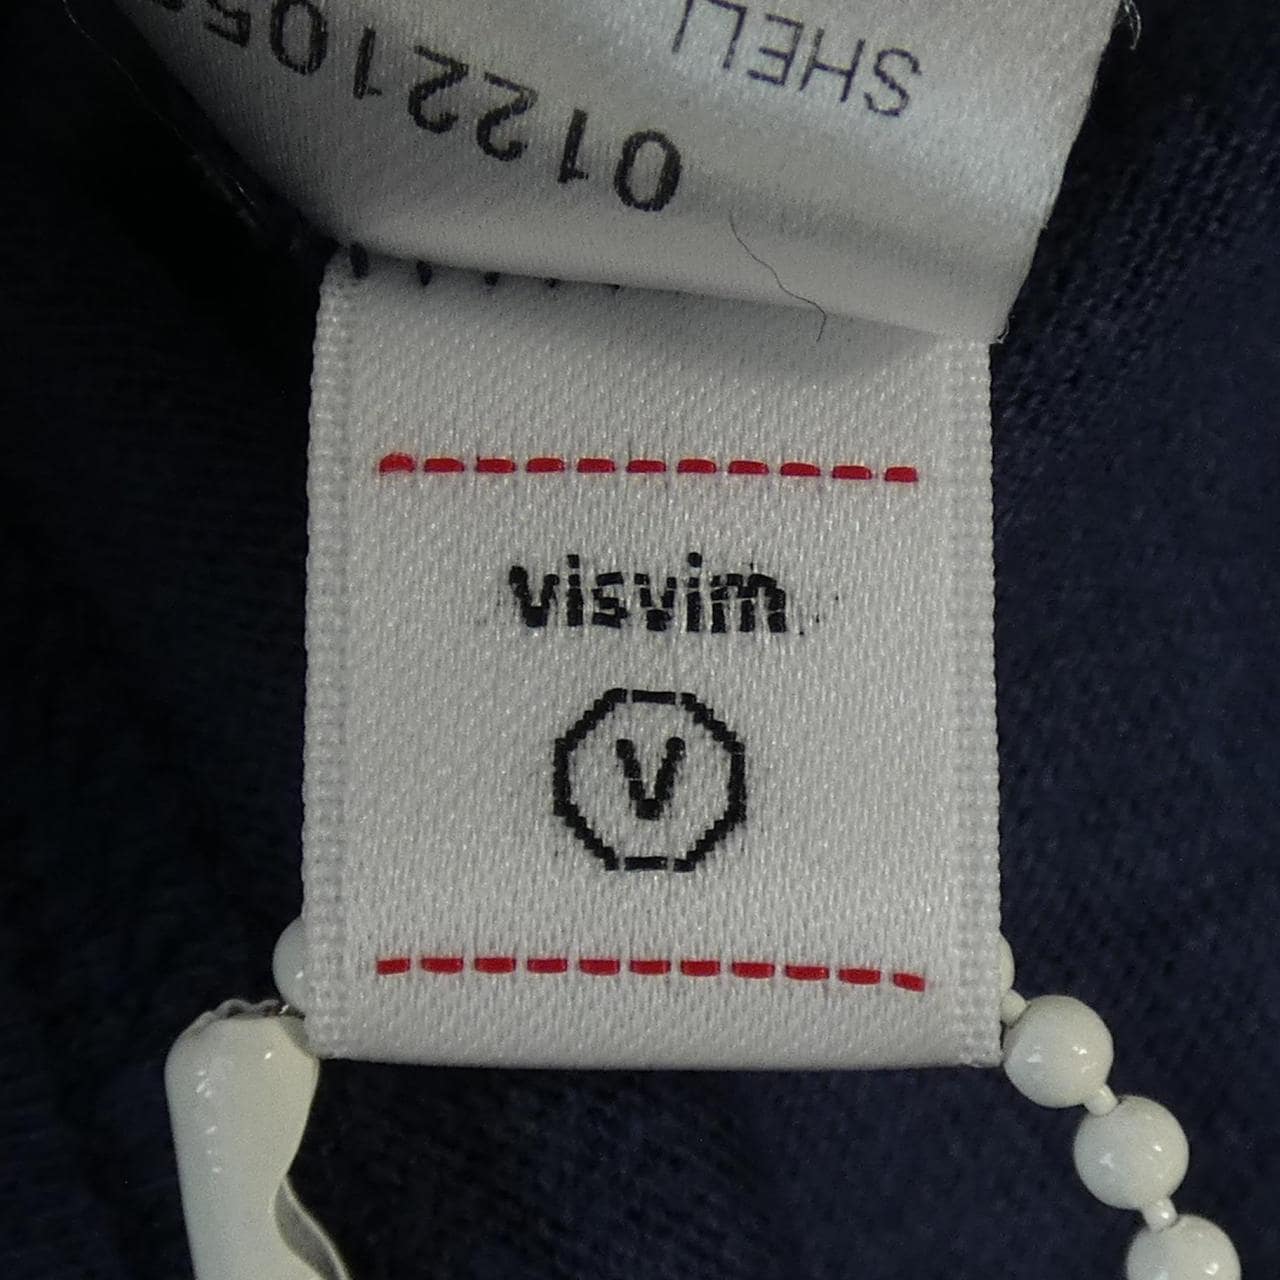 ヴィズヴィム VISVIM Tシャツ